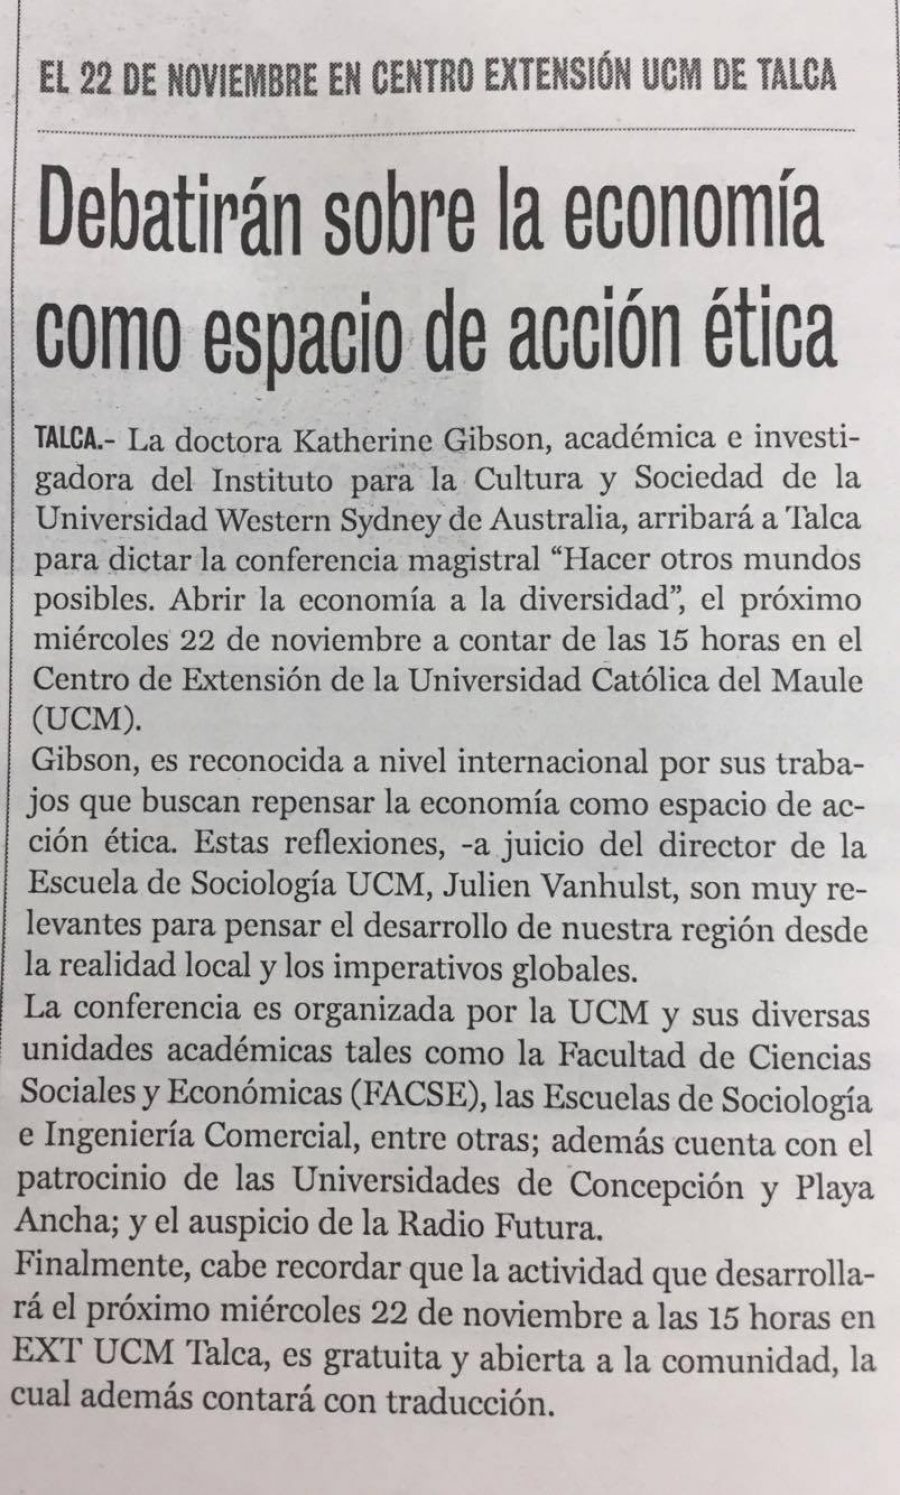 17 de noviembre en Diario La Prensa: “Debatirán sobre la economía como espacio de acción ética”